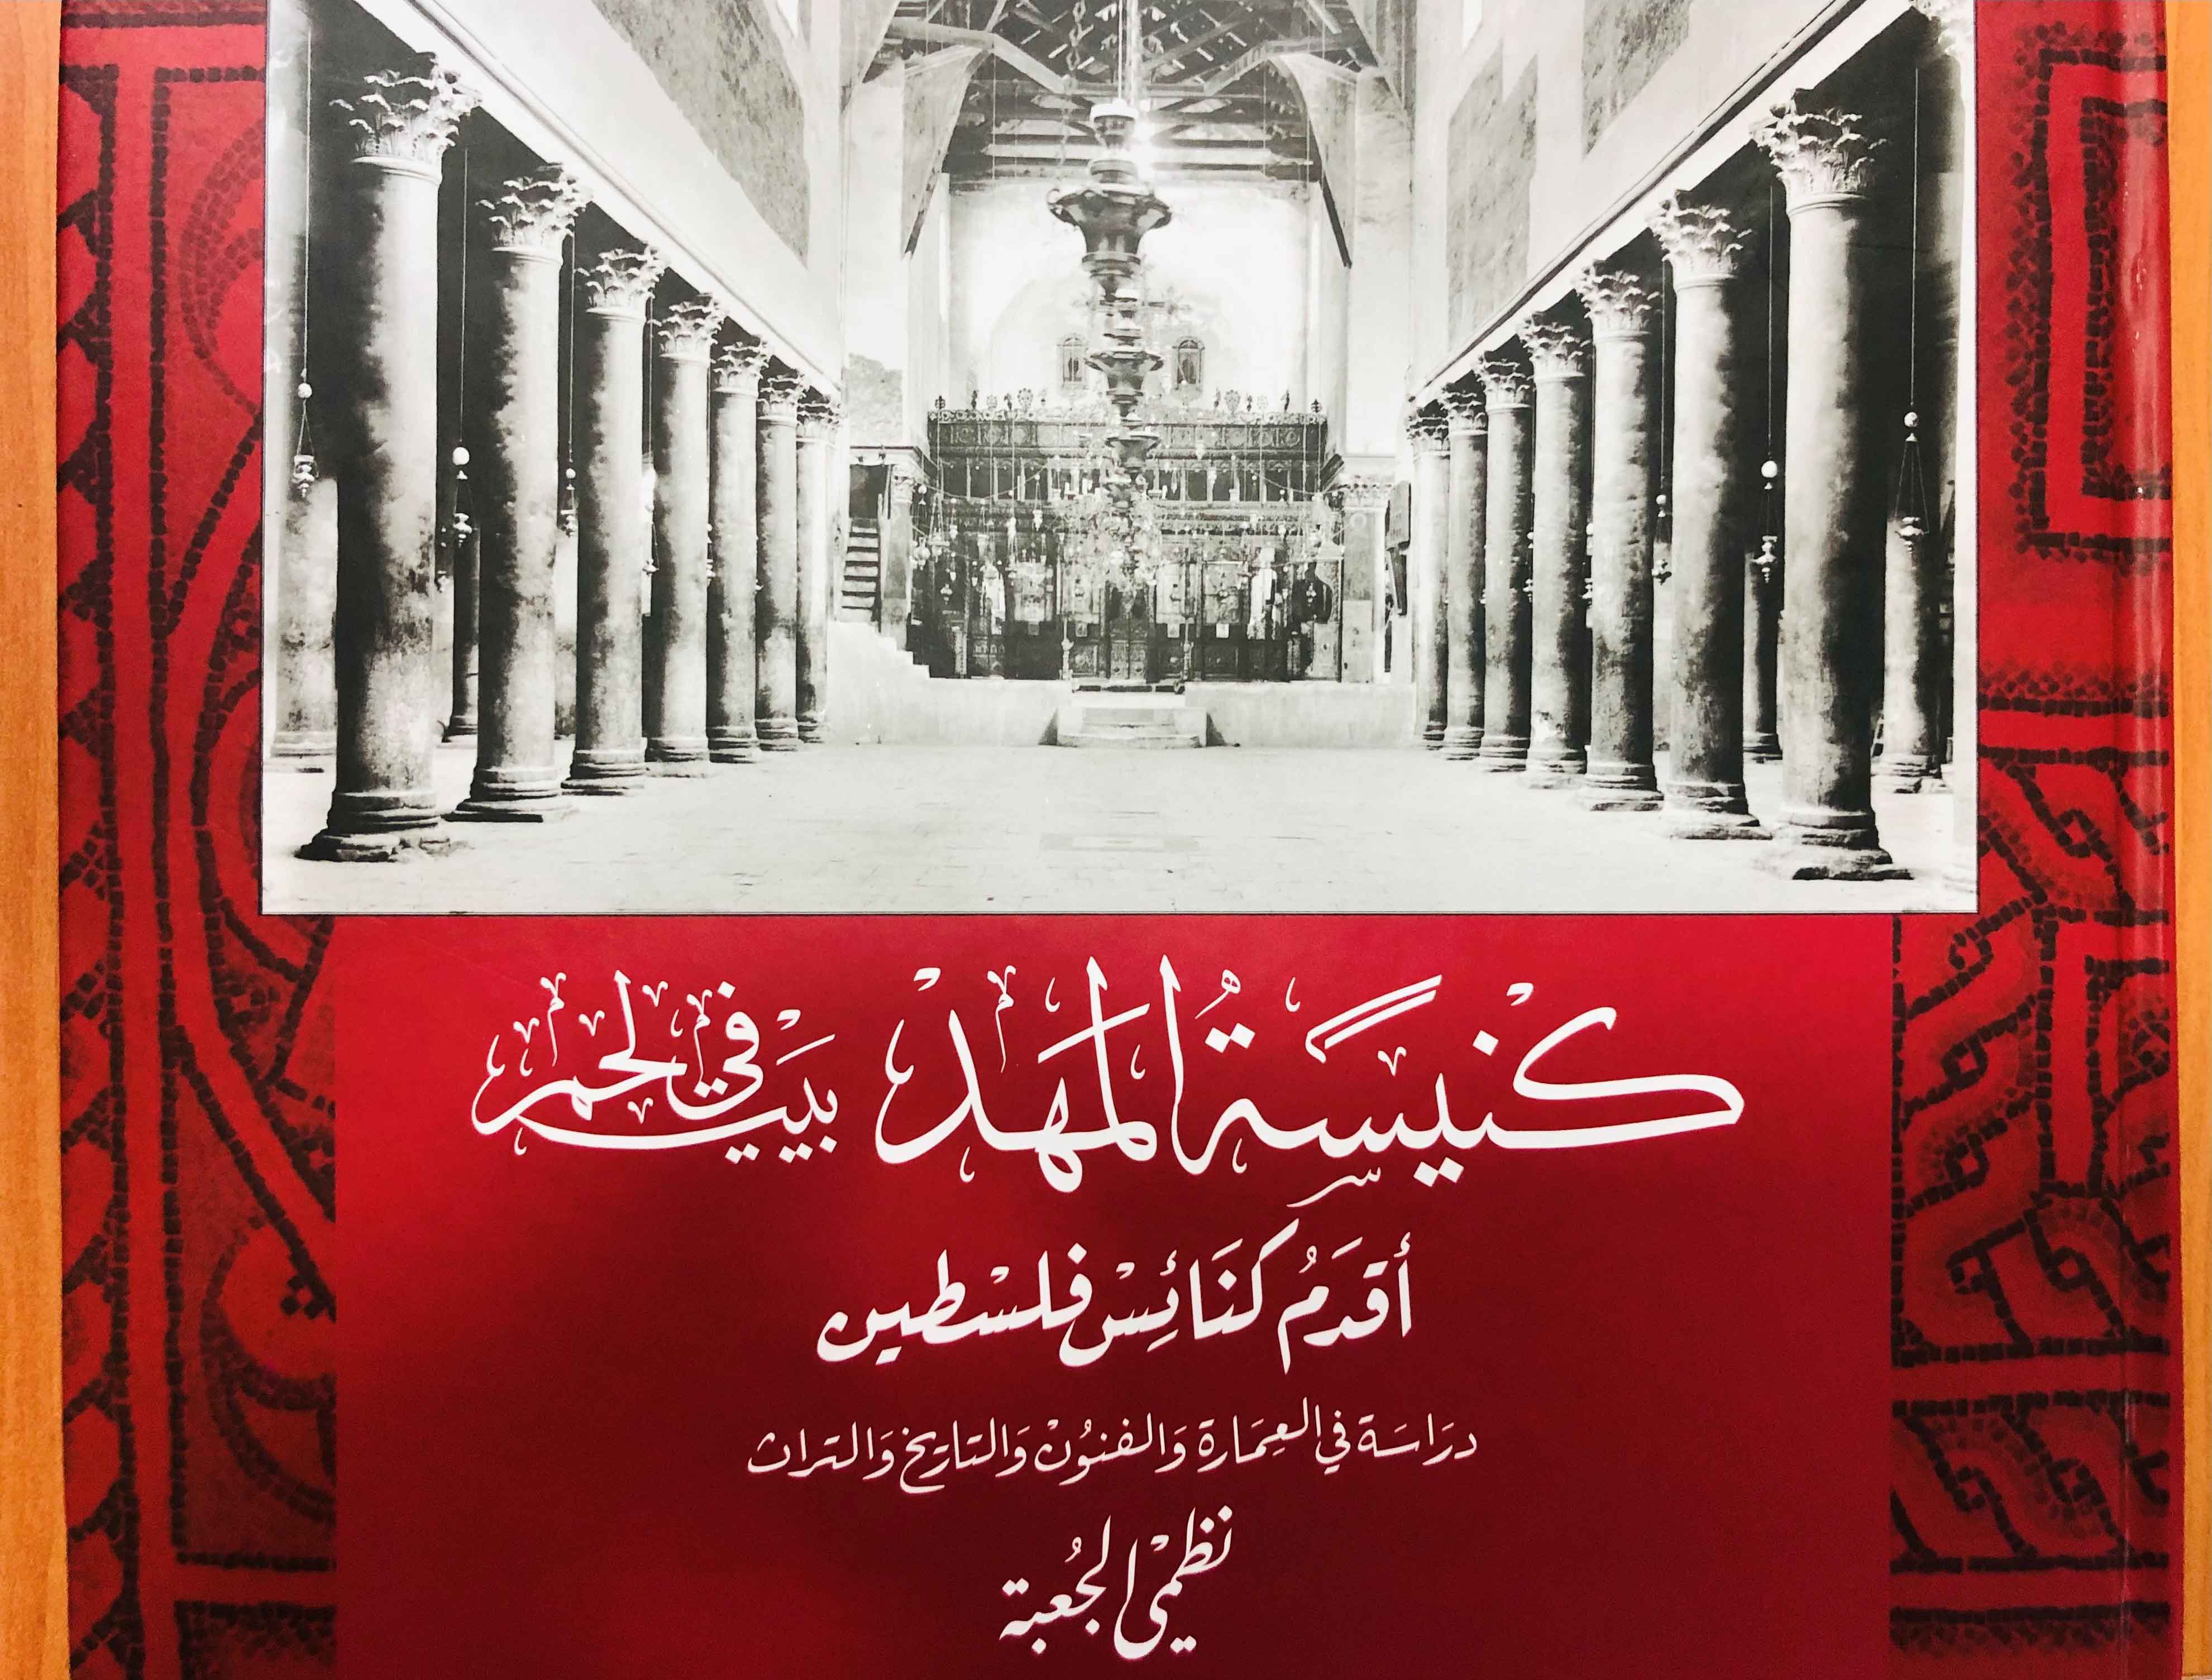 غلاف كتاب: "كنيسة المهد في بيت لحم أقدم كنائس فلسطين: دراسة في العمارة والفنون والتاريخ والتراث"